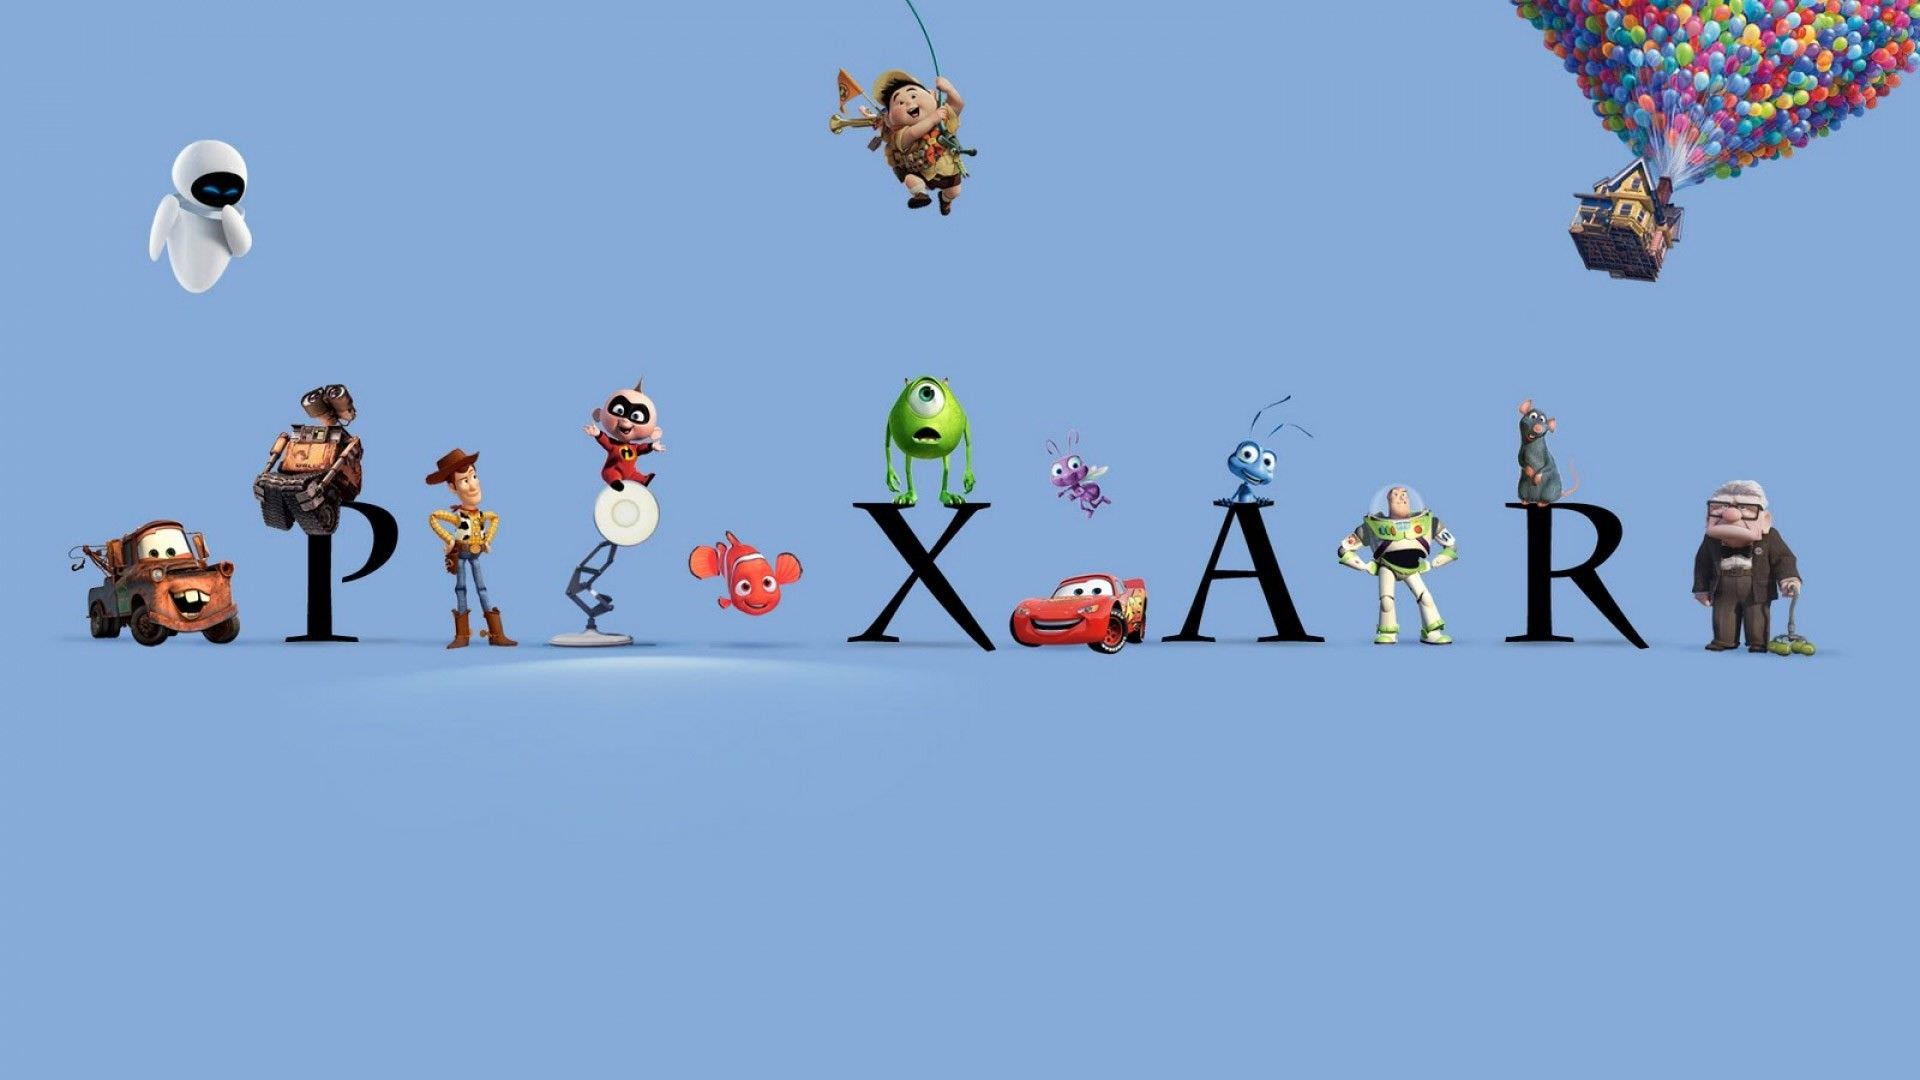 Download Up Pixar 2020 4K Minimalist iPhone Wallpaper 